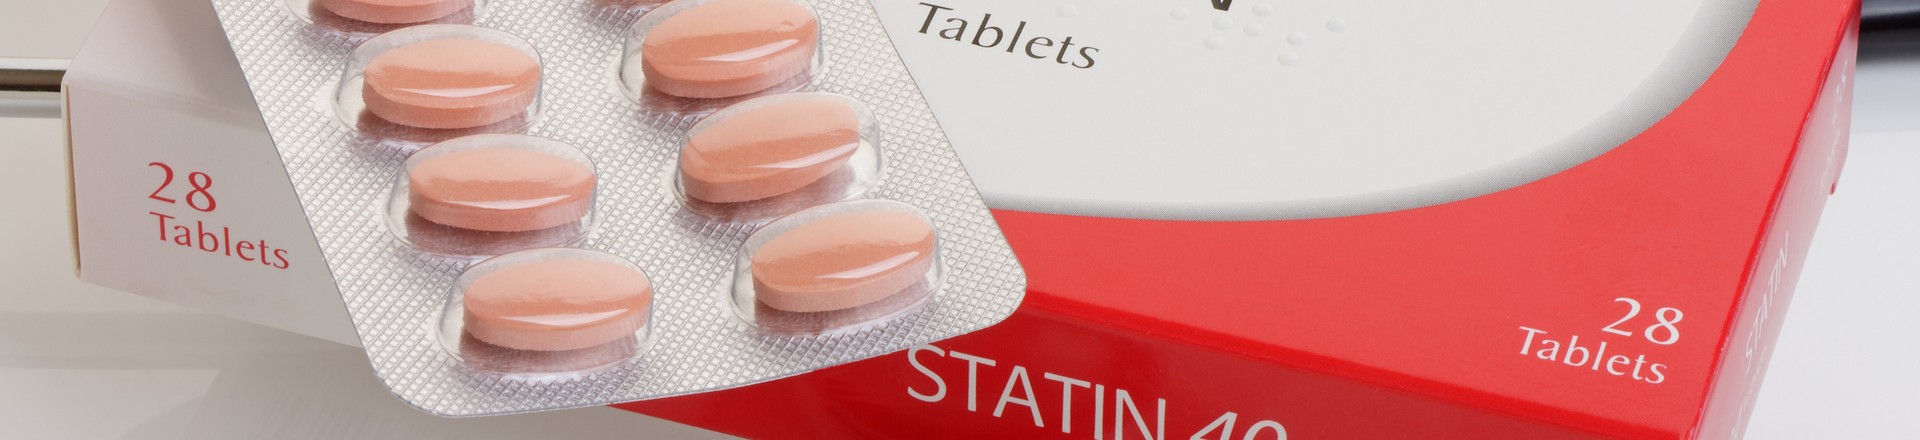 are statins safe?